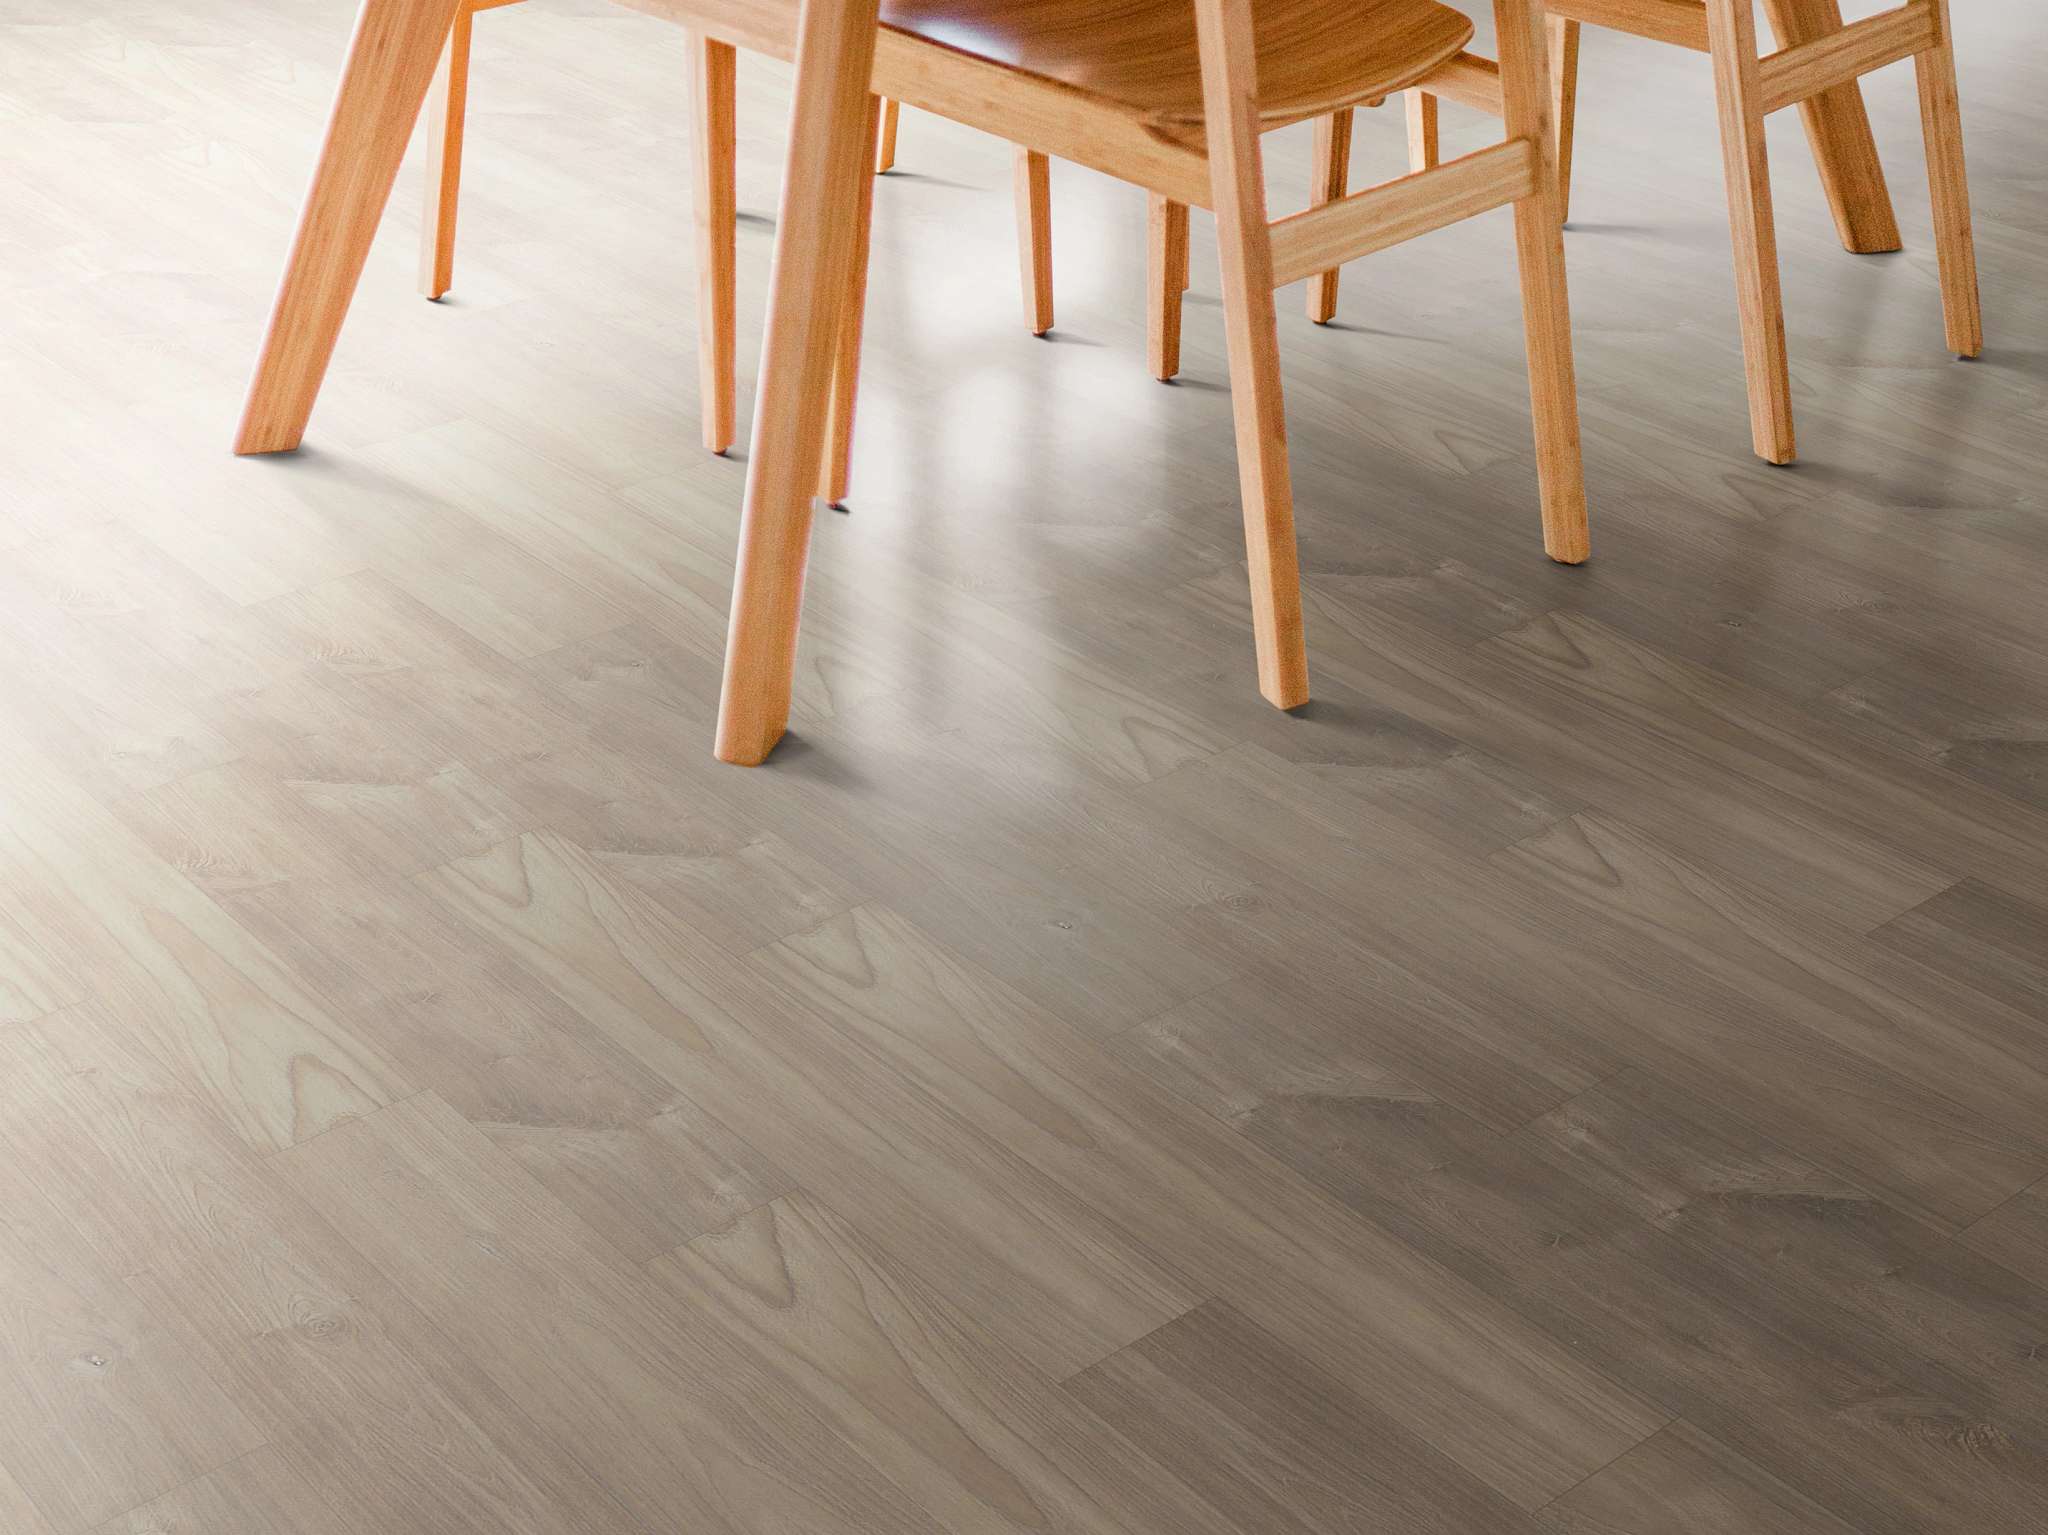 Intrigue Sl448 Chiseled Oak Laminates, Shaw Carpet Hardwood Laminate Flooring Cost